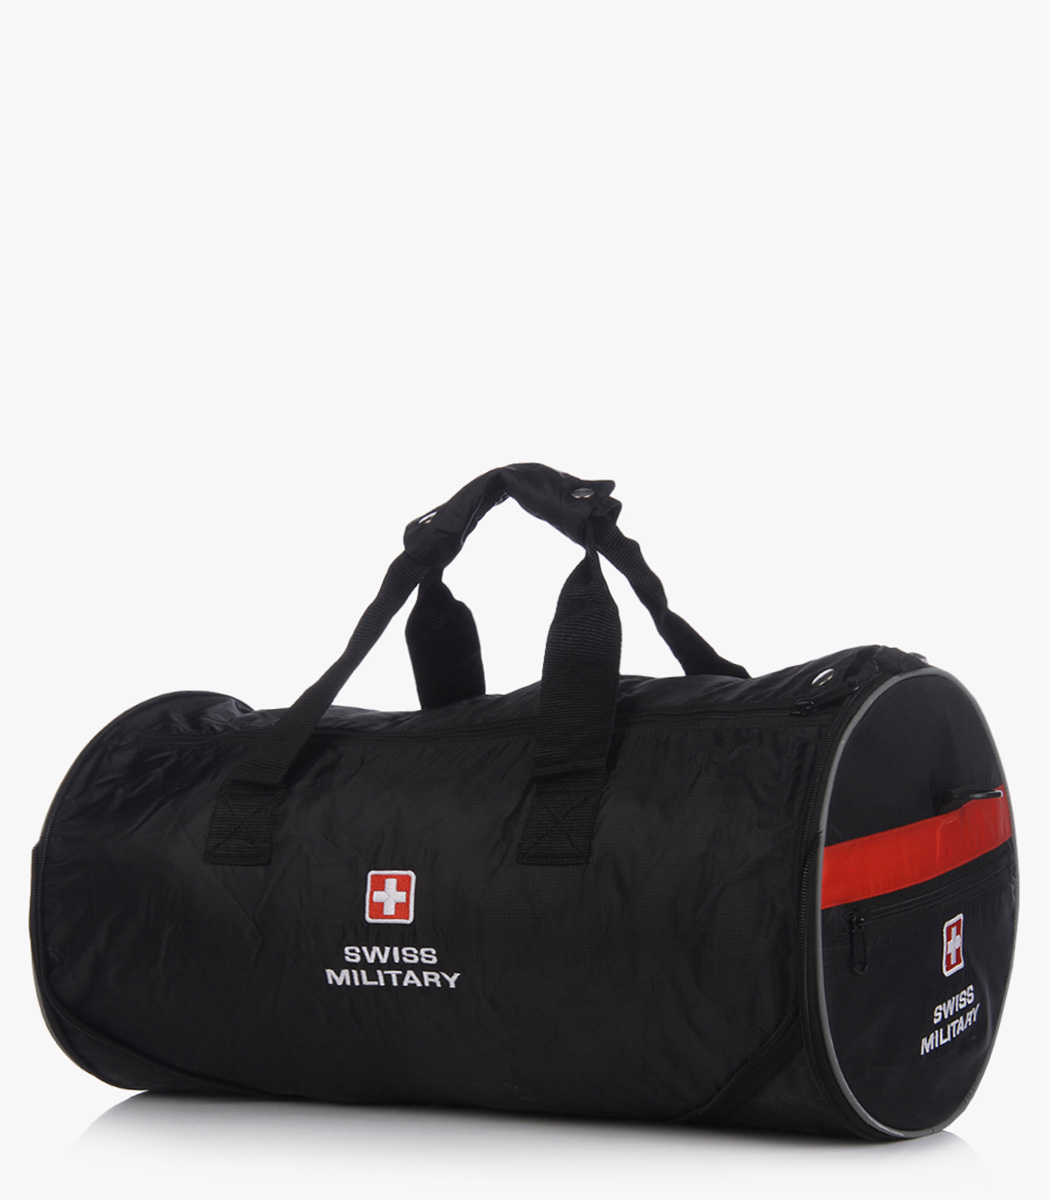 Messenger bag, Foldable Bag, Gym bag